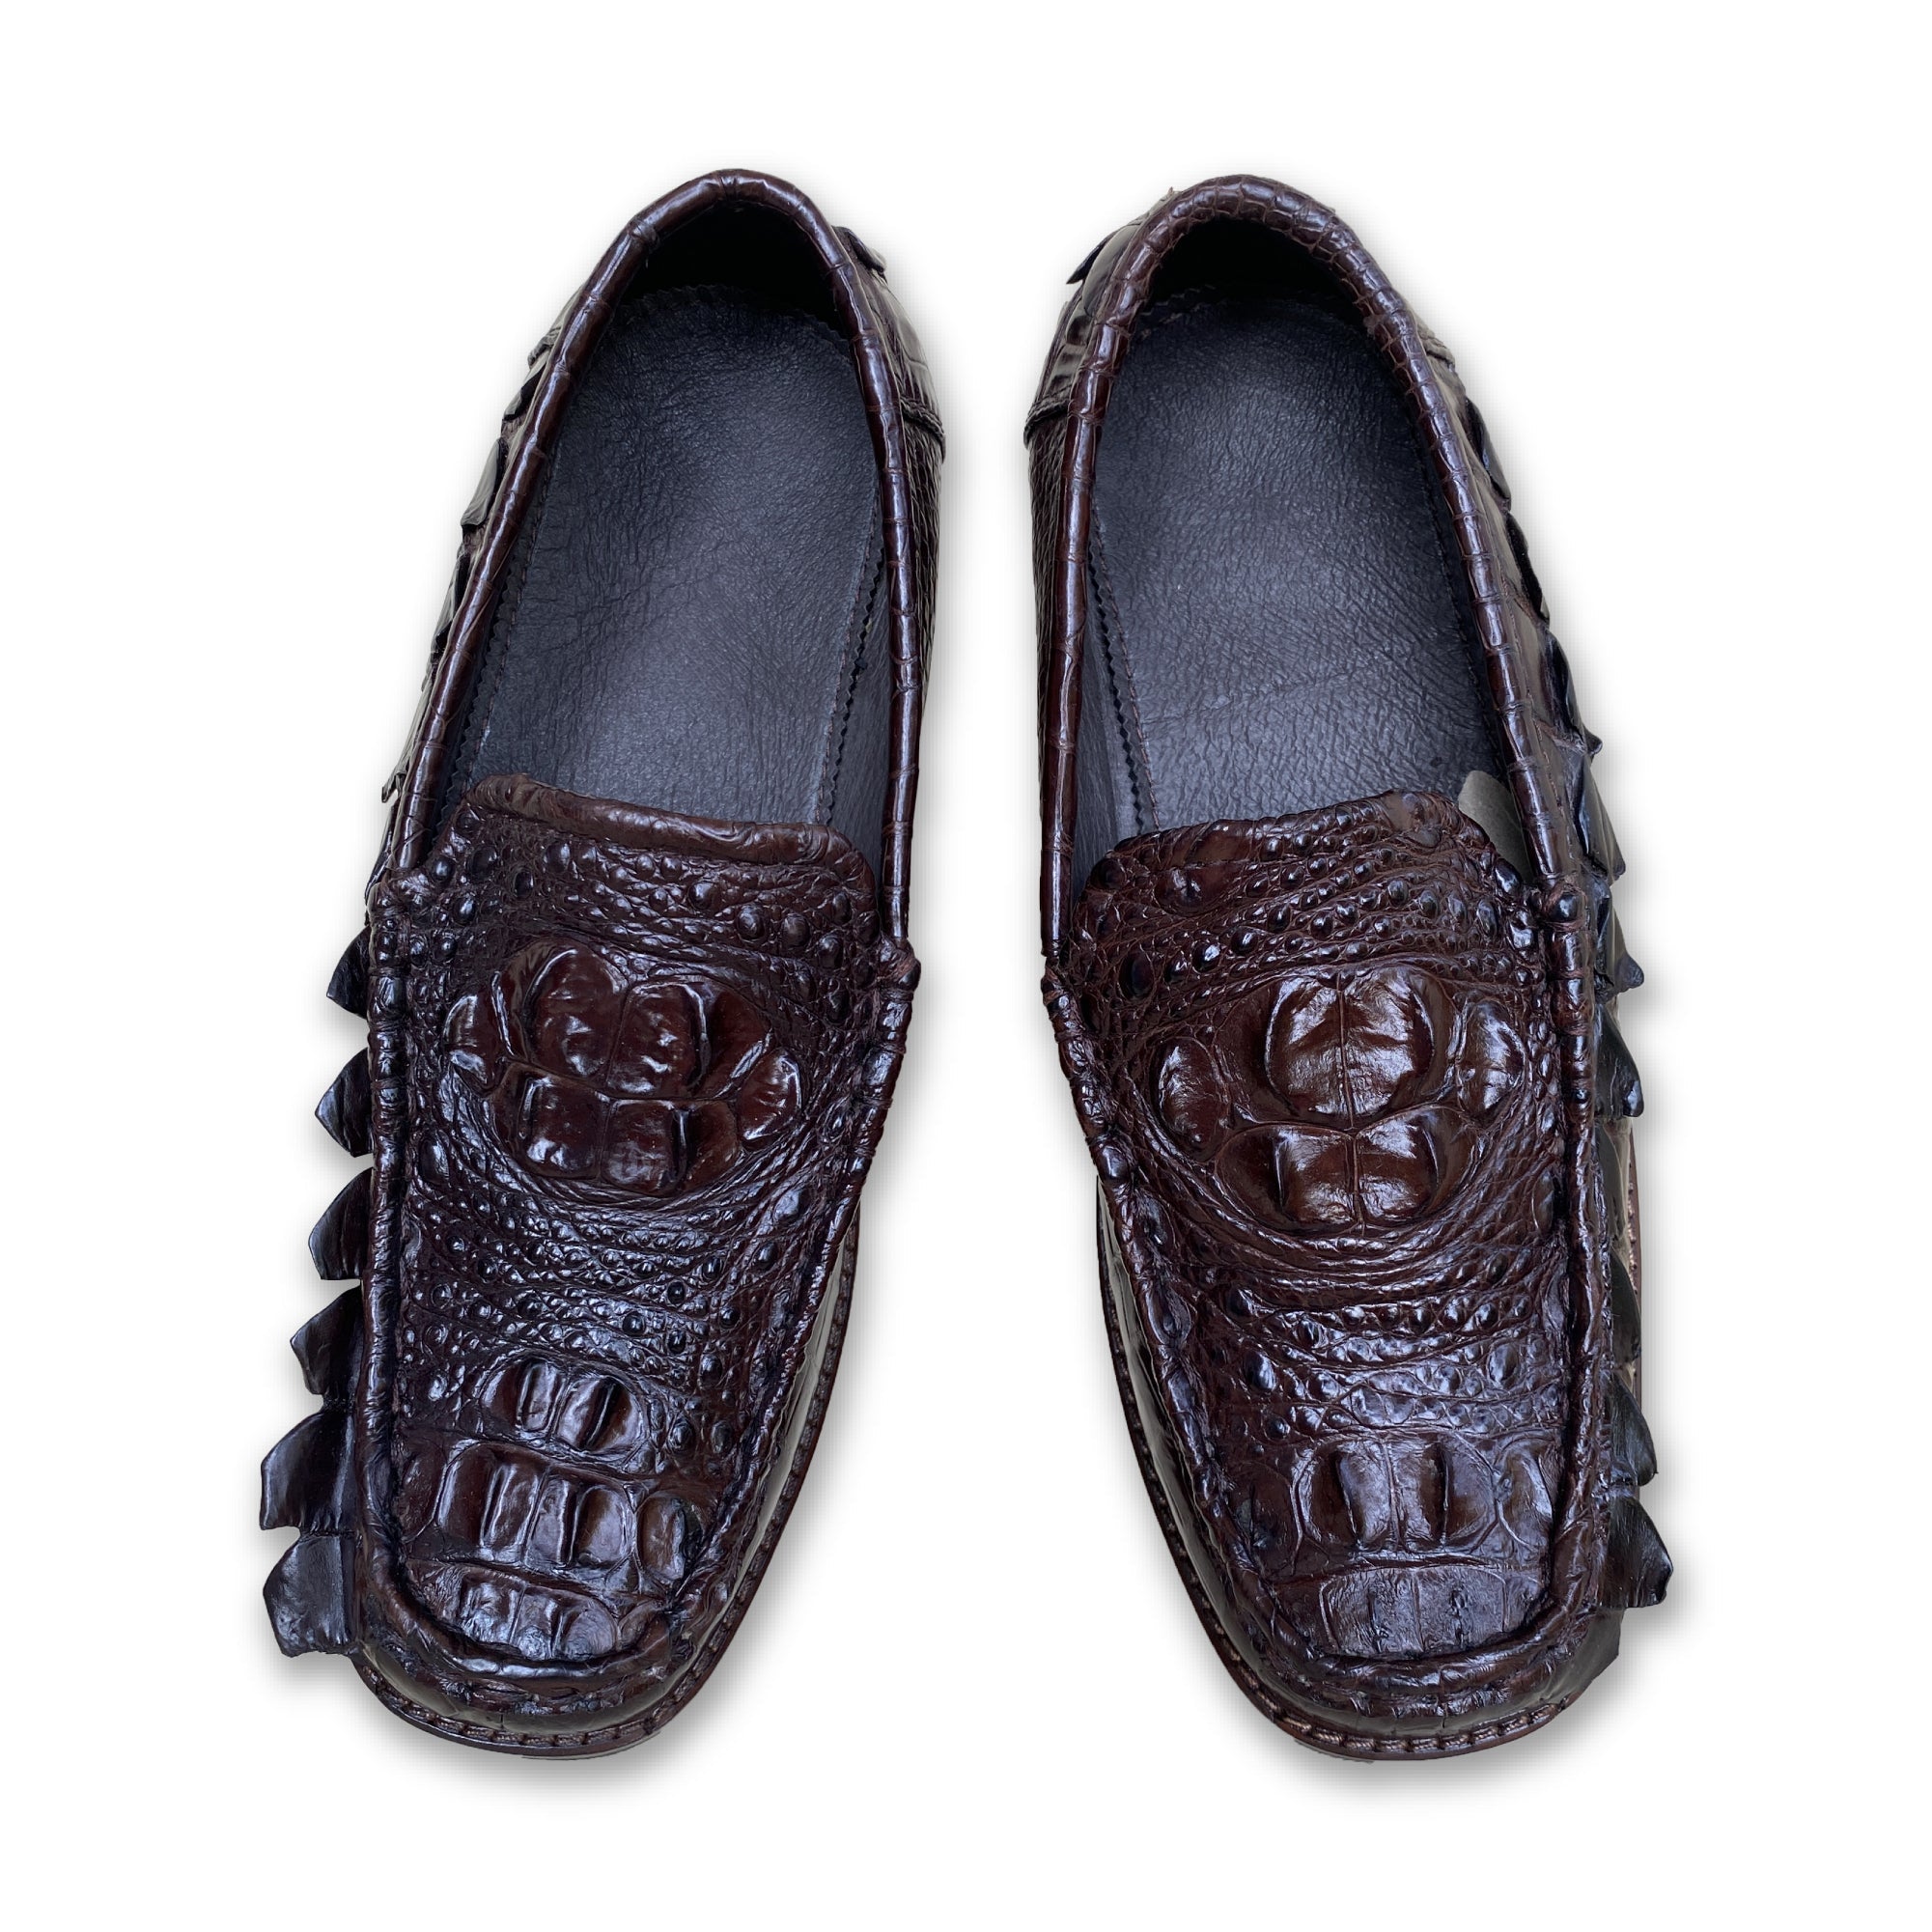 Black Mens Alligator Leather Slip-On Loafer Shoes for Men | Crocodile Hornback Leather Loffer | SH51F, Black / 14